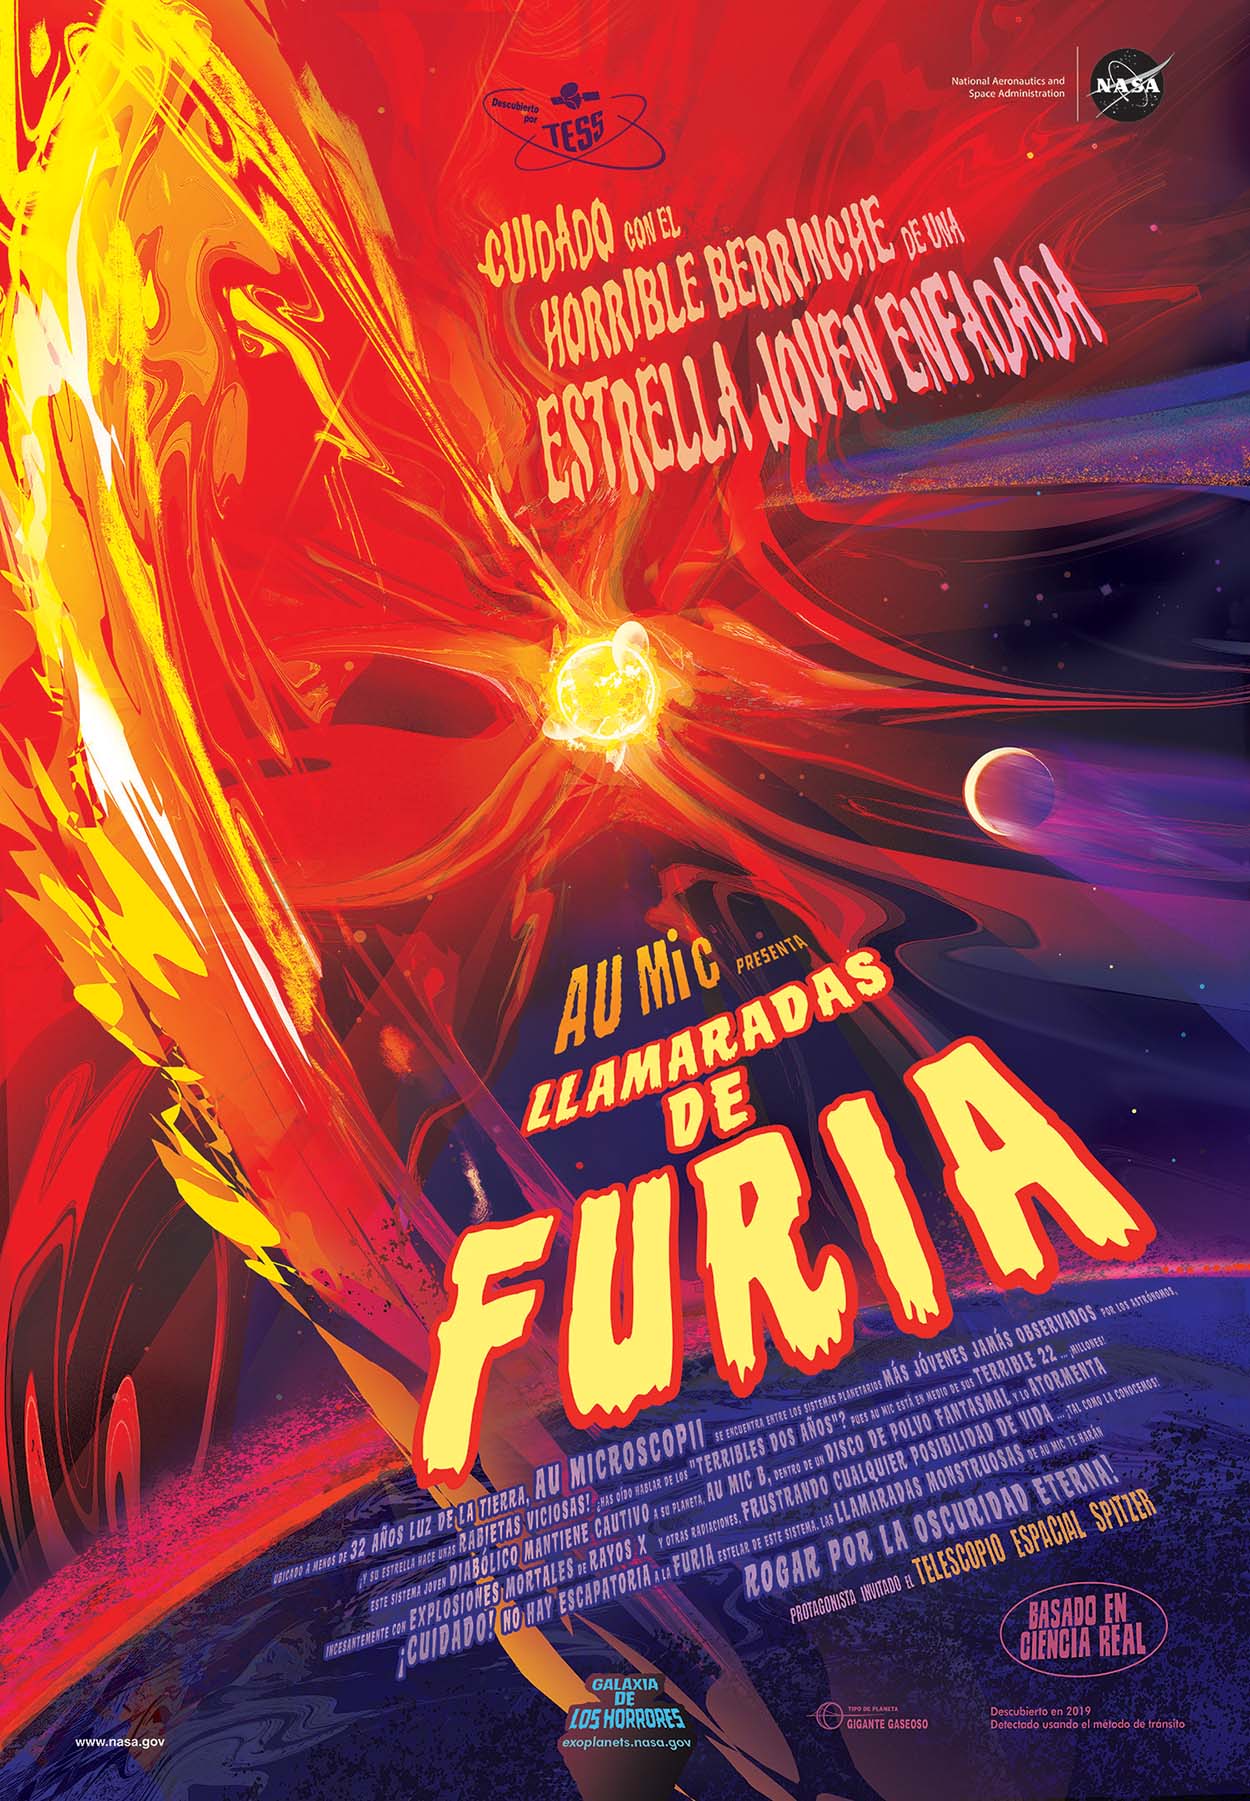 Llamaradas de Furia – "Galaxy of Horrors" póster (En Español)